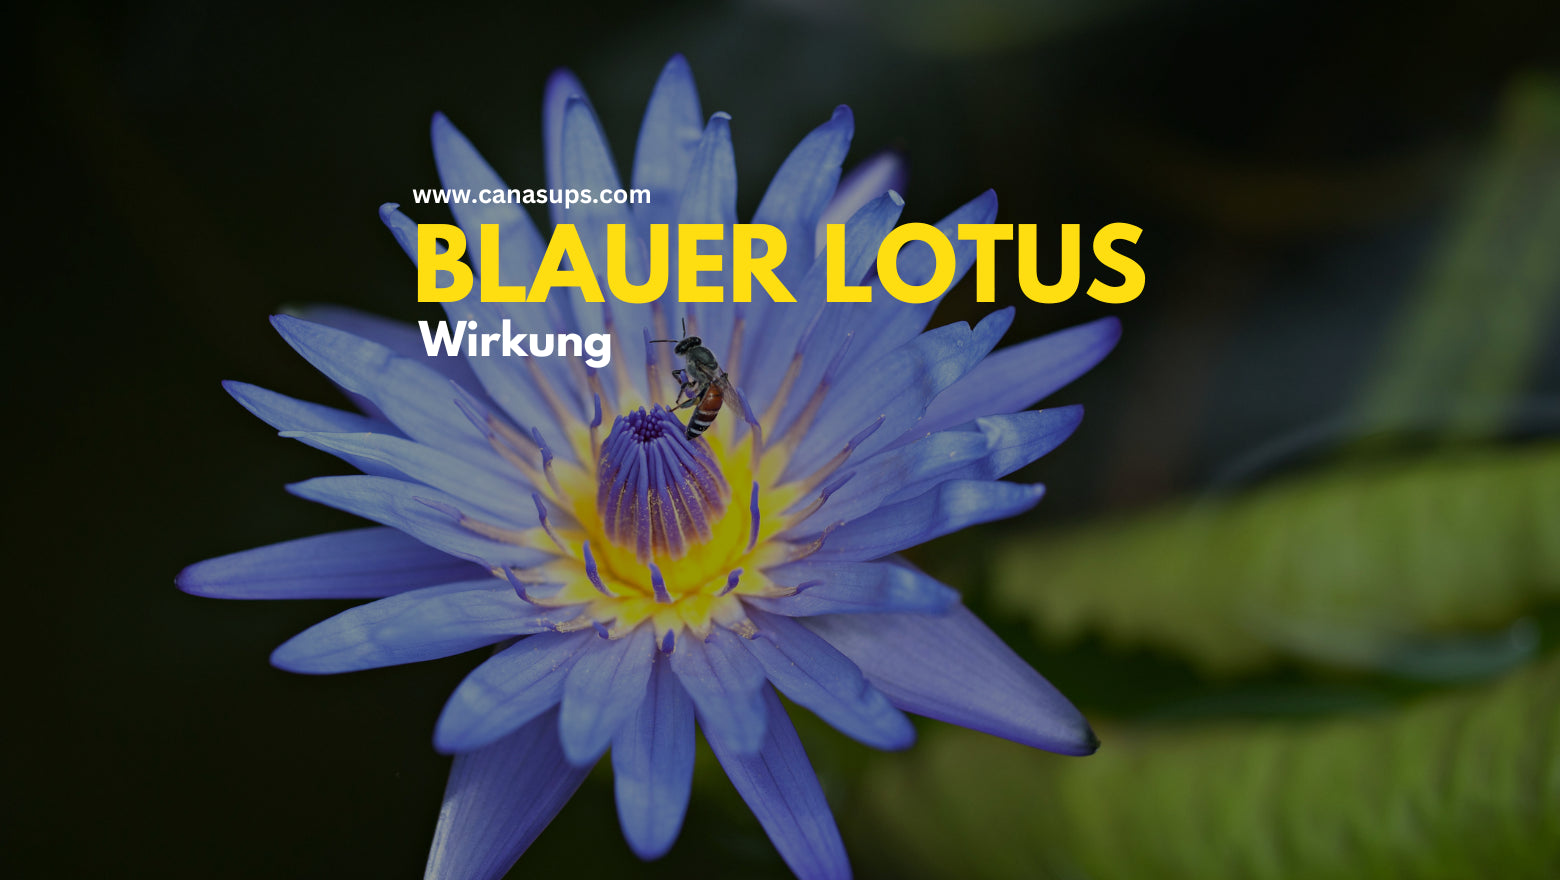 Blauer Lotus - Alles über Geschichte, Verwendung und Wirkung – Canasups